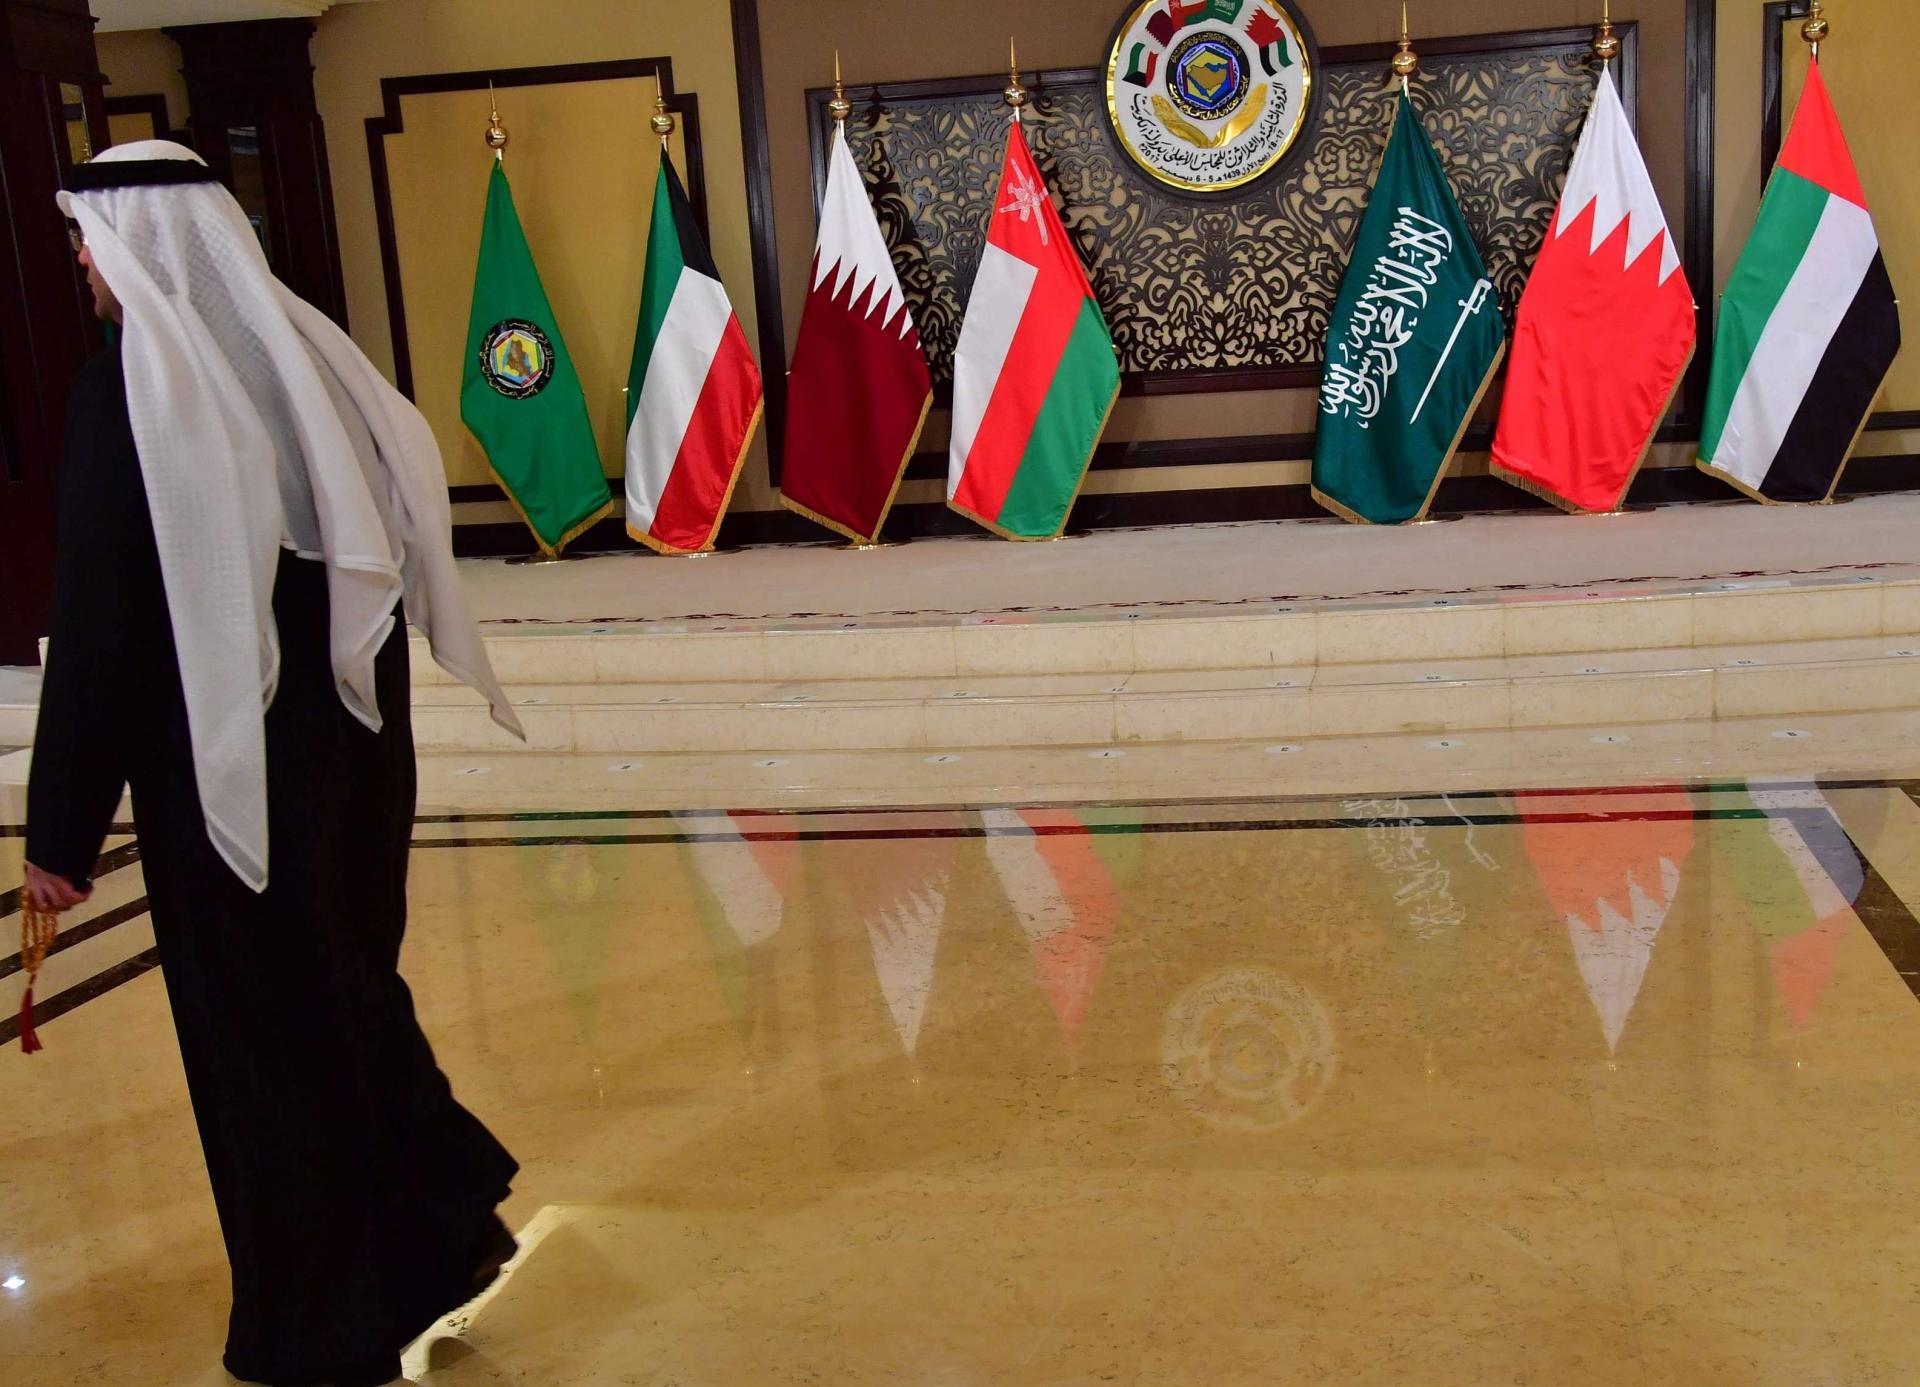 حديث قطر عن اتفاقية أمنية في الشرق الاوسط اطلق تكهنات حول نوايا الانسحاب من مجلس التعاون الخليجي